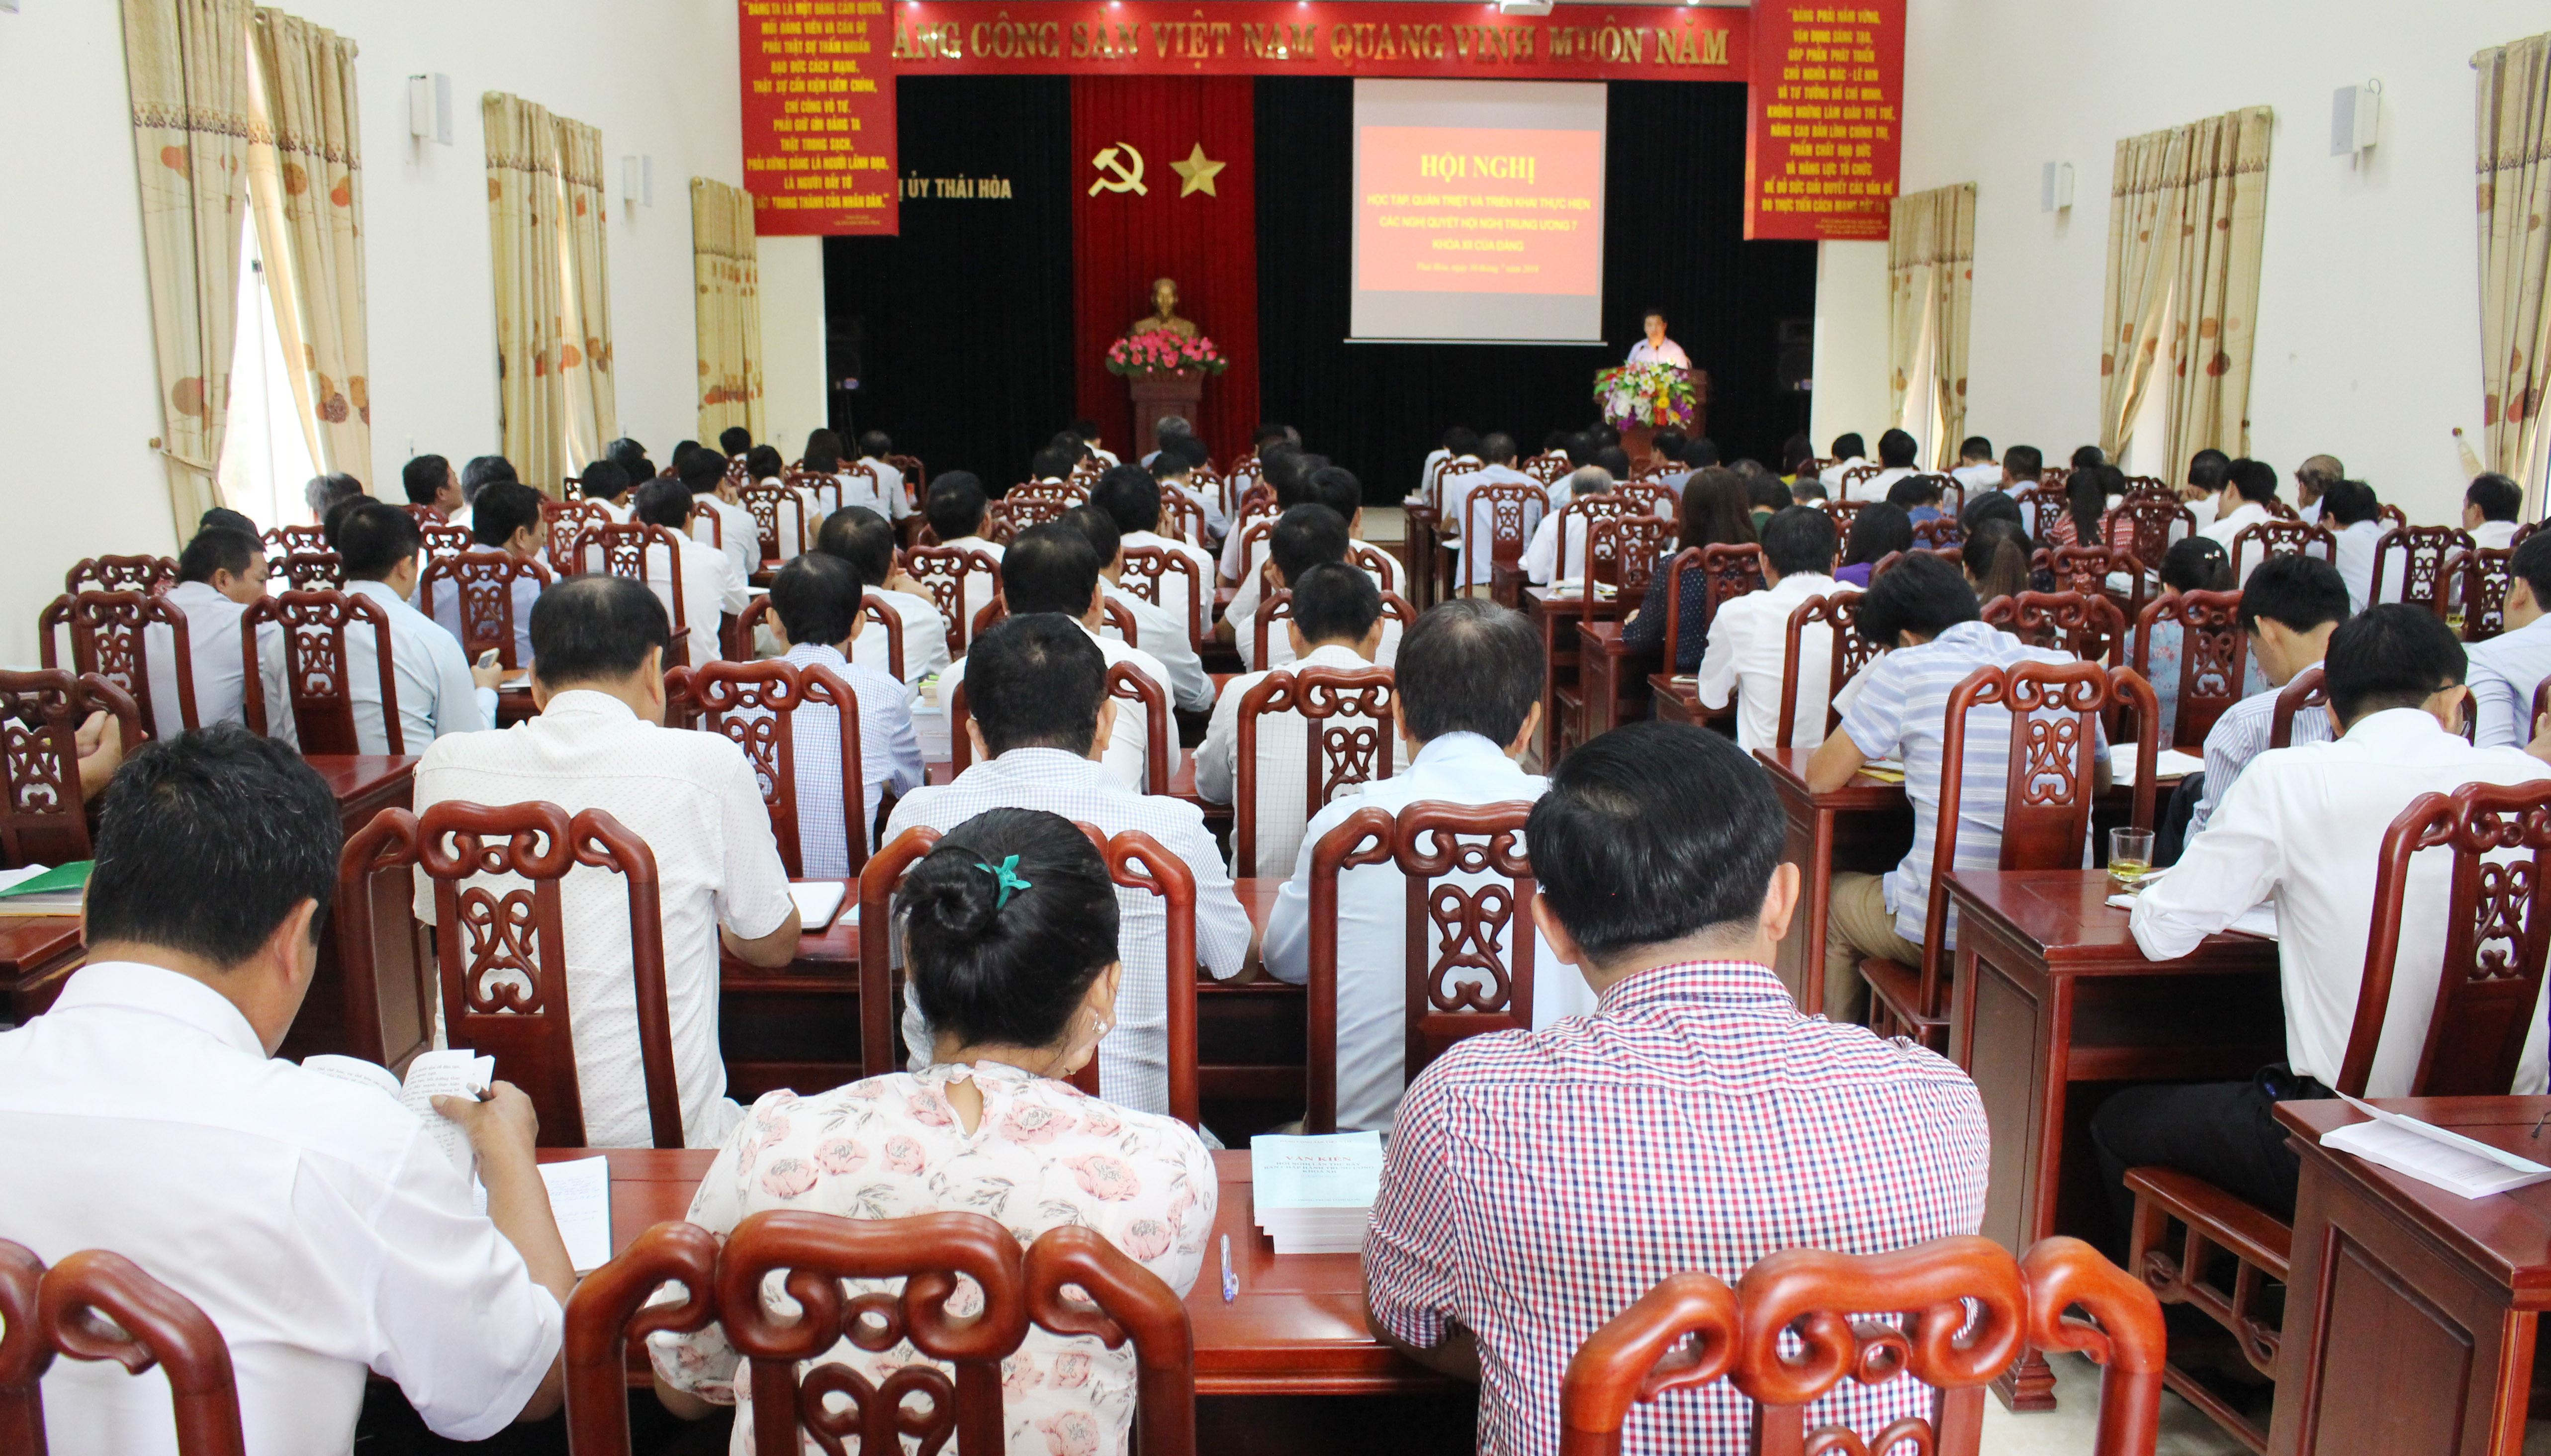 Có 200 cán bộ, đảng viên thuộc Đảng bộ thị xã Thái Hòa tham gia quán triệt Nghị quyết Trung ương 7. Ảnh: 